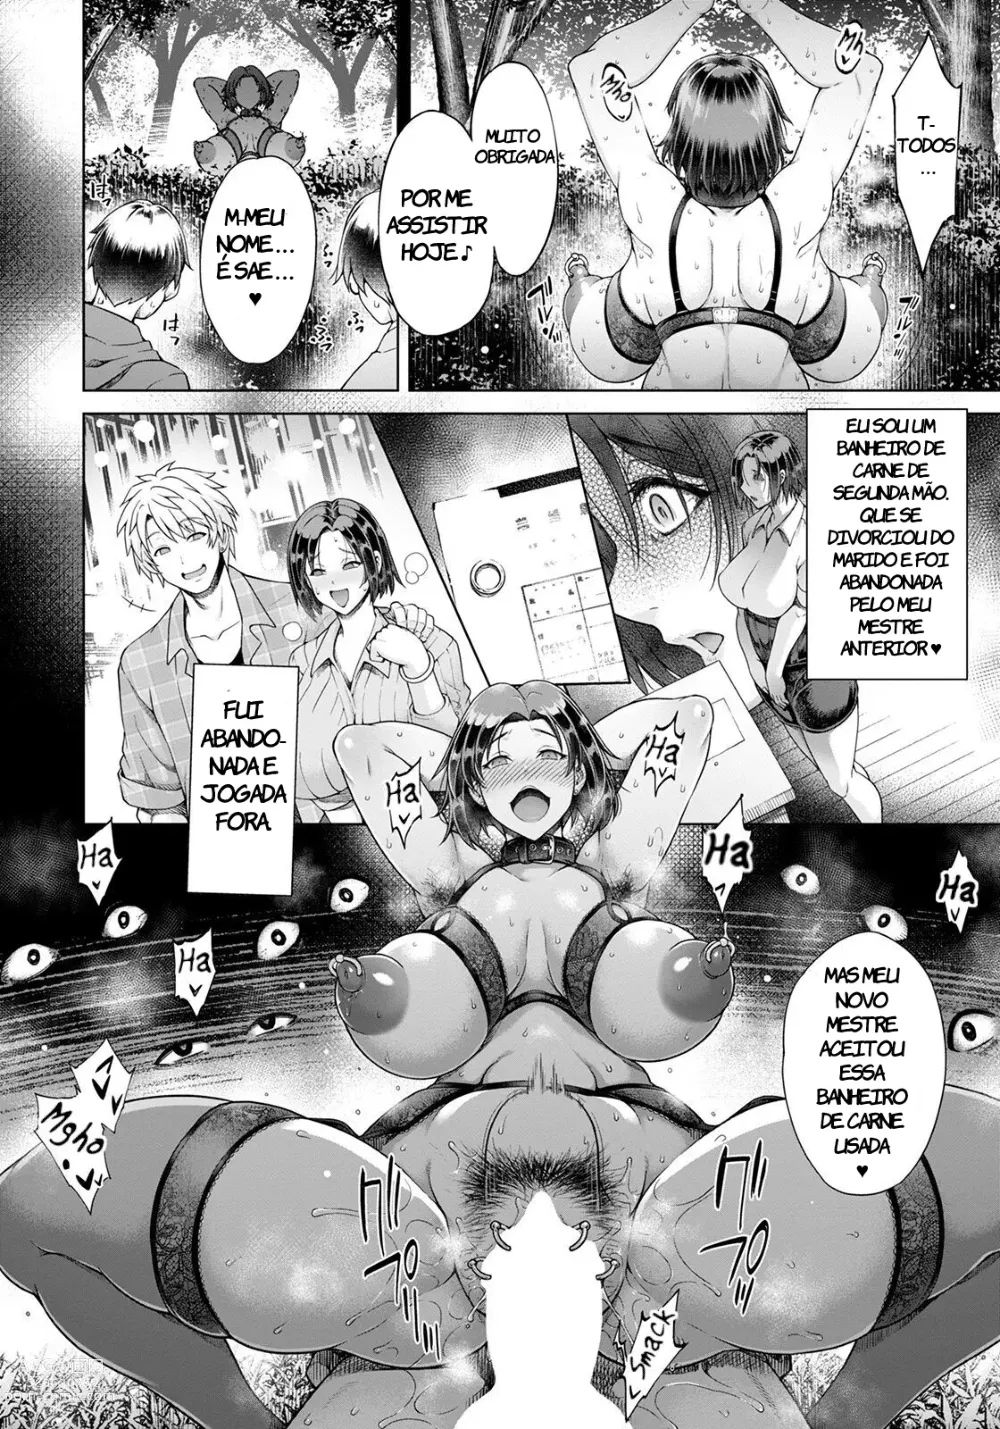 Page 16 of manga A Banheiro de Carne Mais Feliz do Mundo